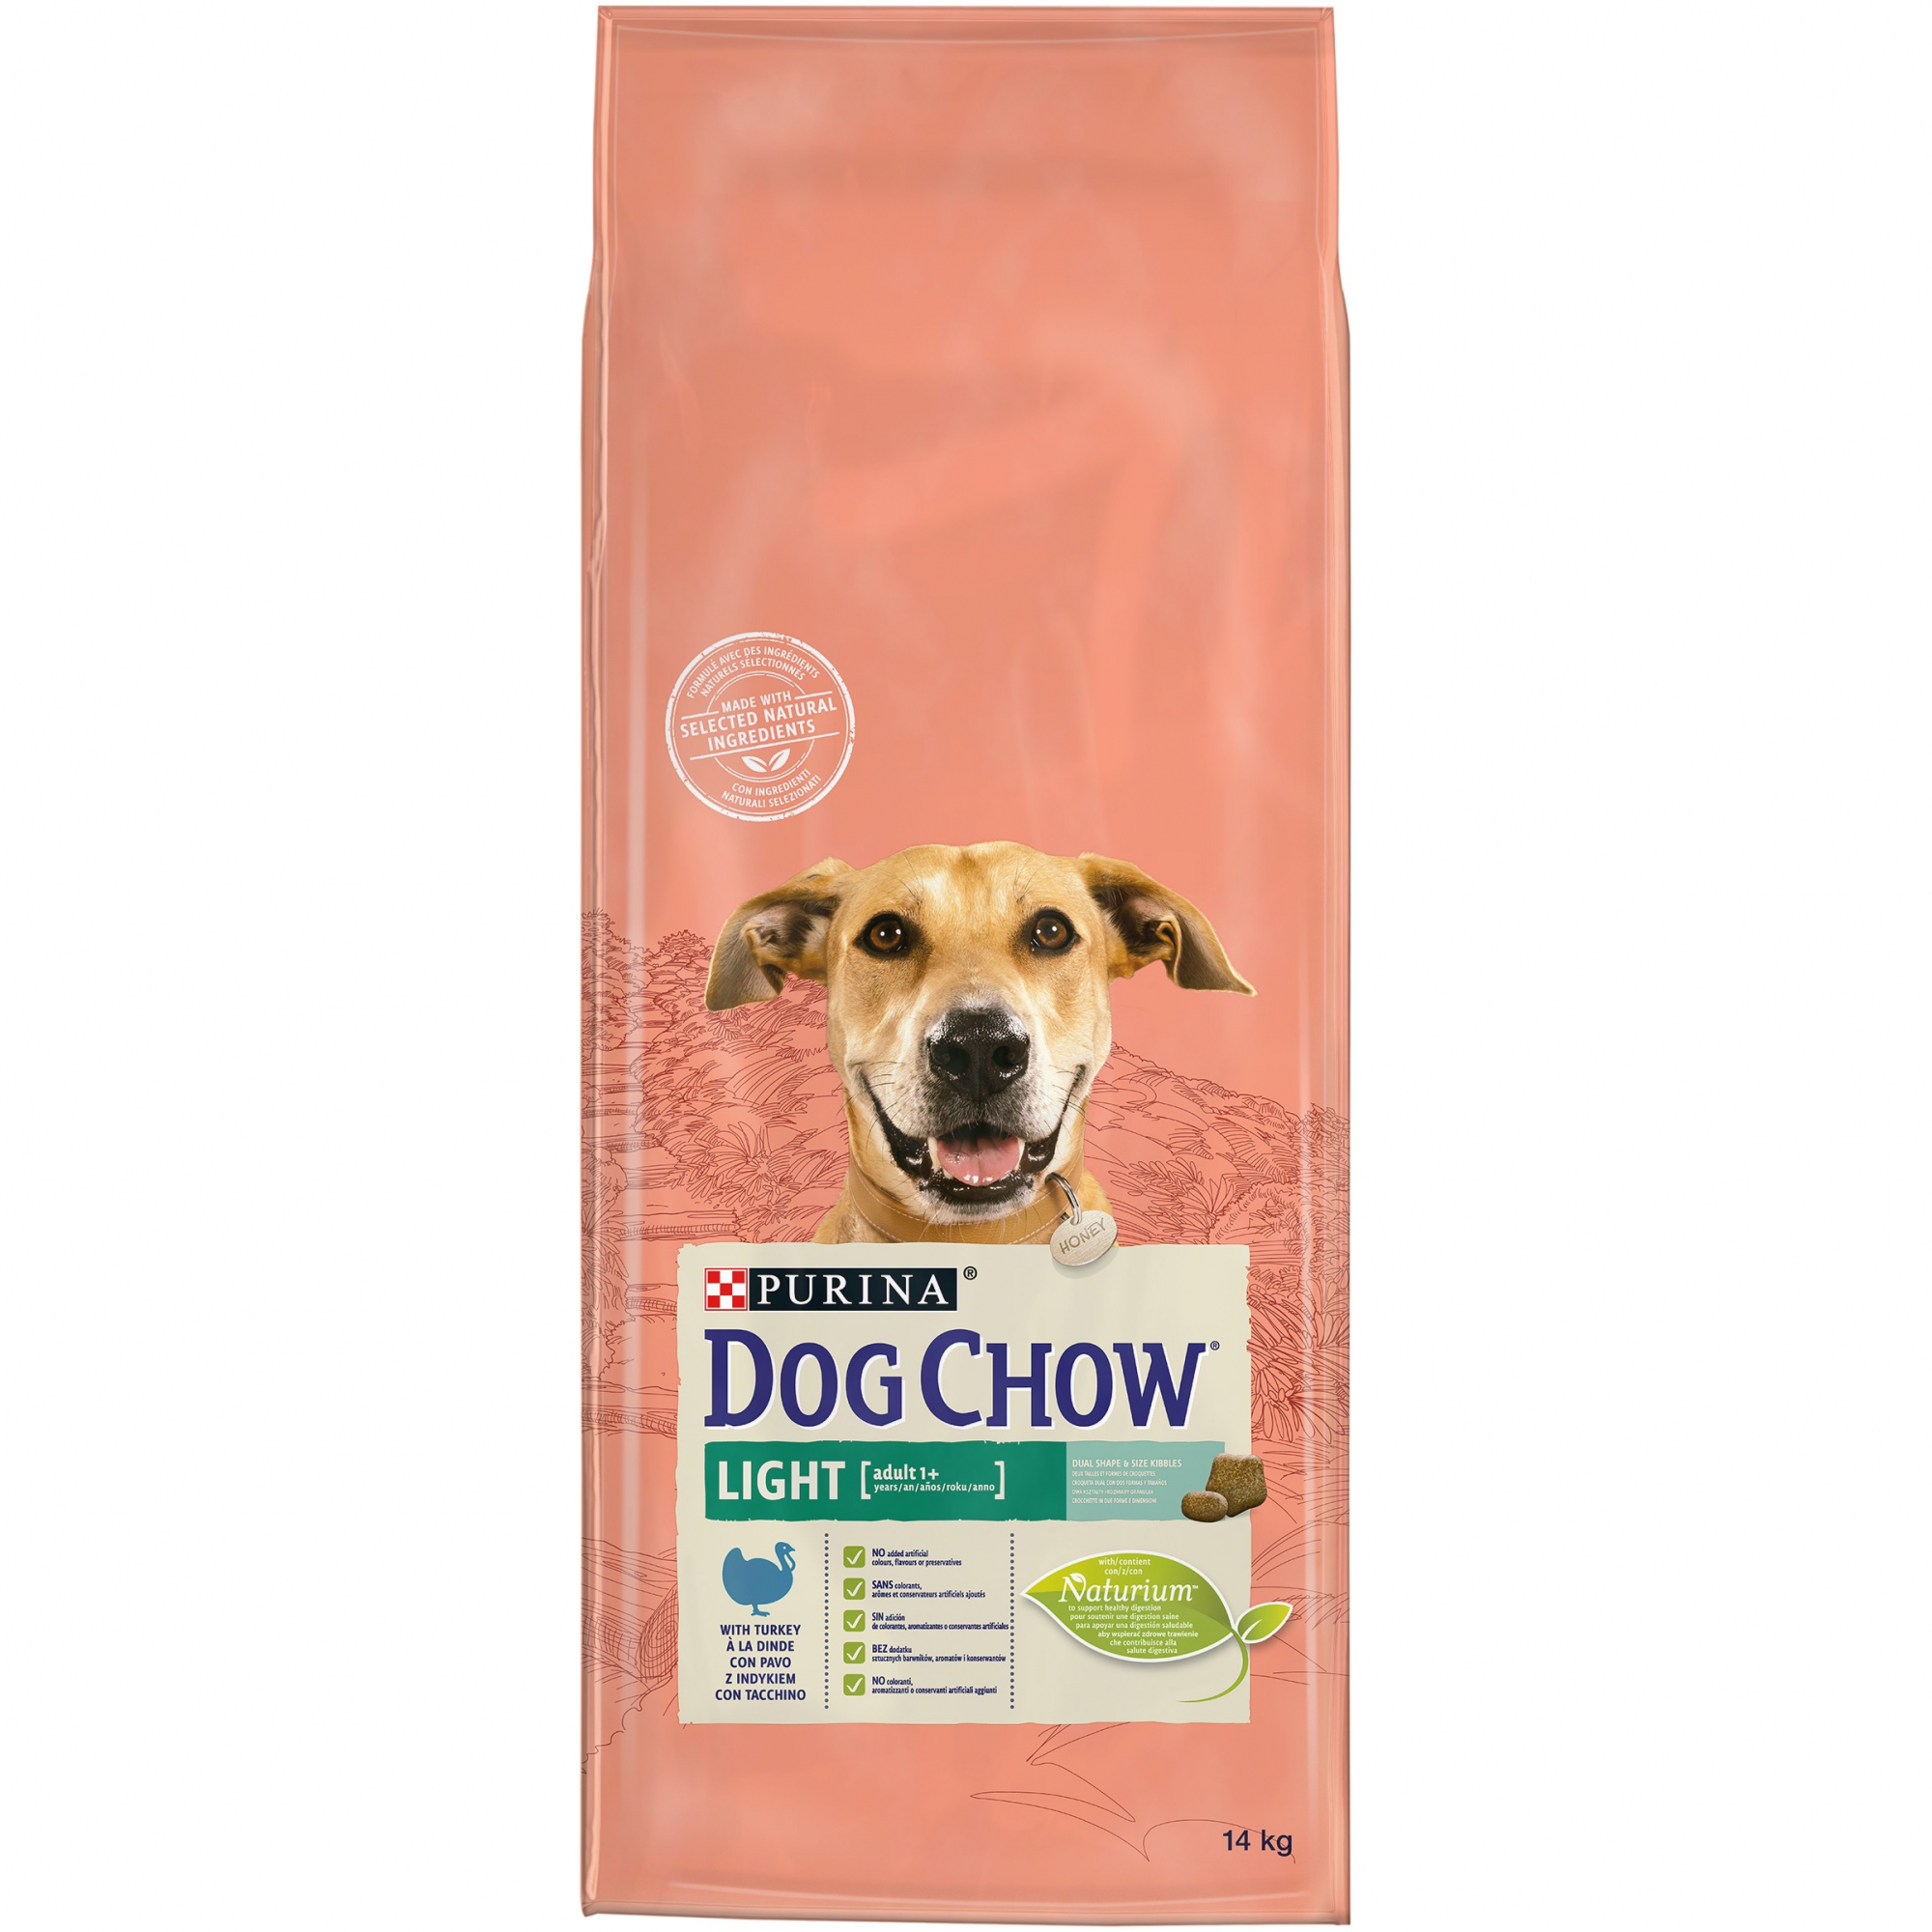 DOG CHOW Light hondenvoer met kalkoen